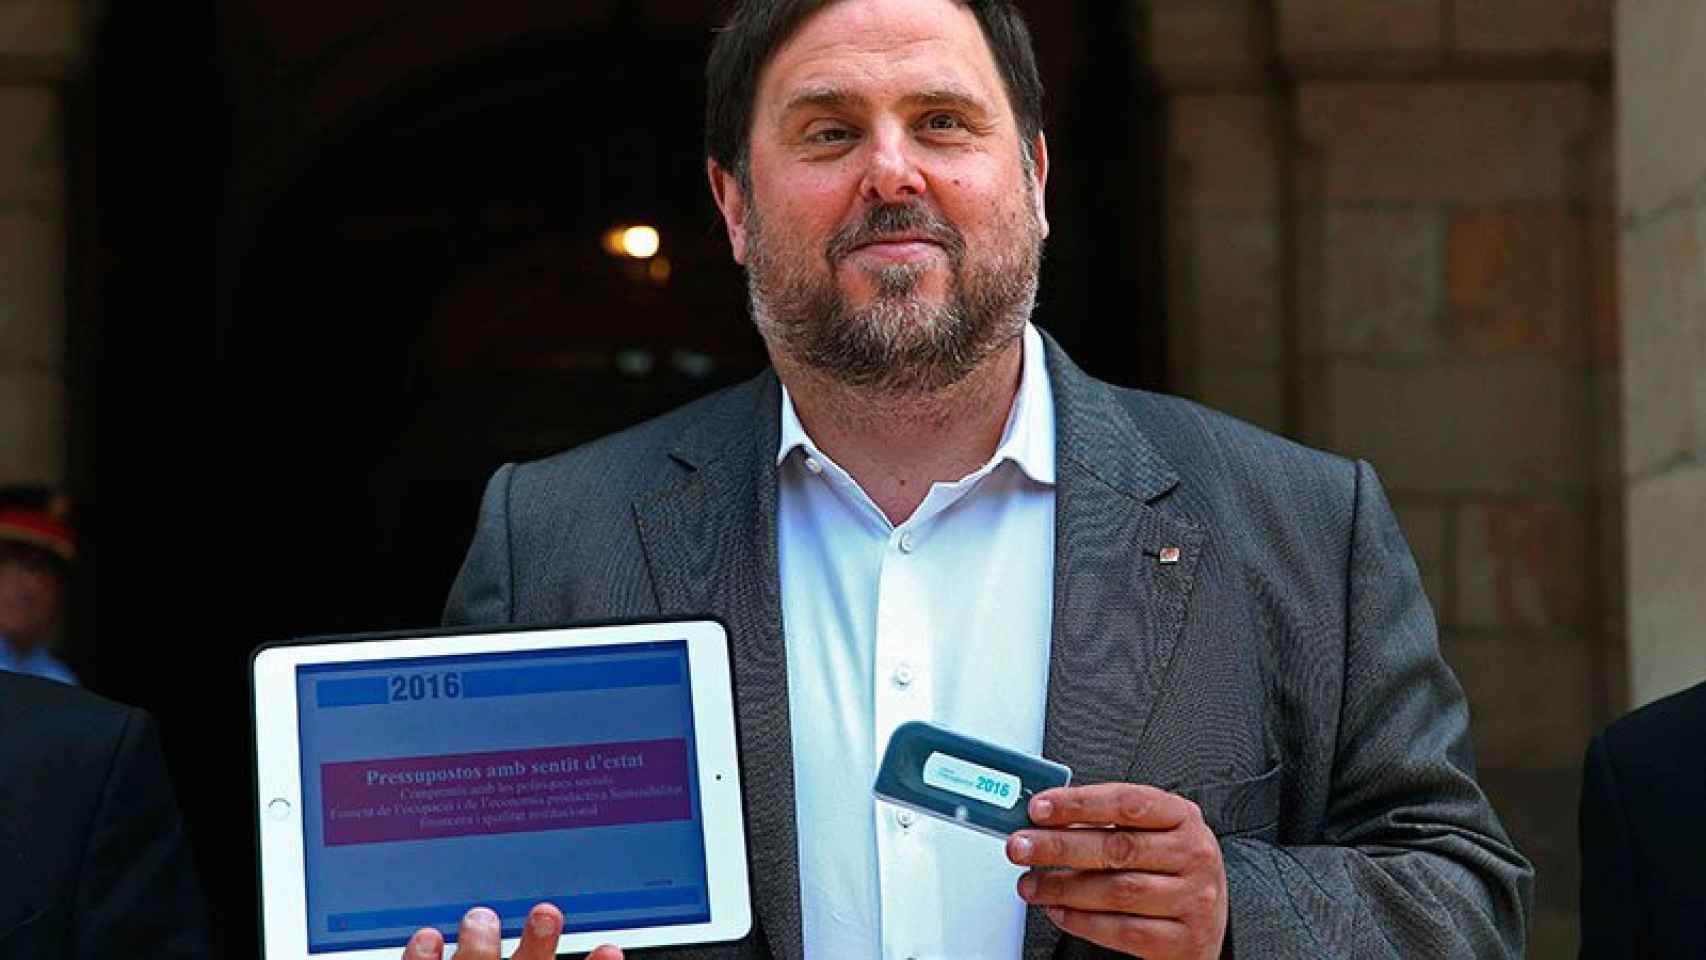 El vicepresidente económico de la Generalitat, Oriol Junqueras, muestra el proyecto de los presupuestos de 2016 a la entrada del Parlamento catalán.